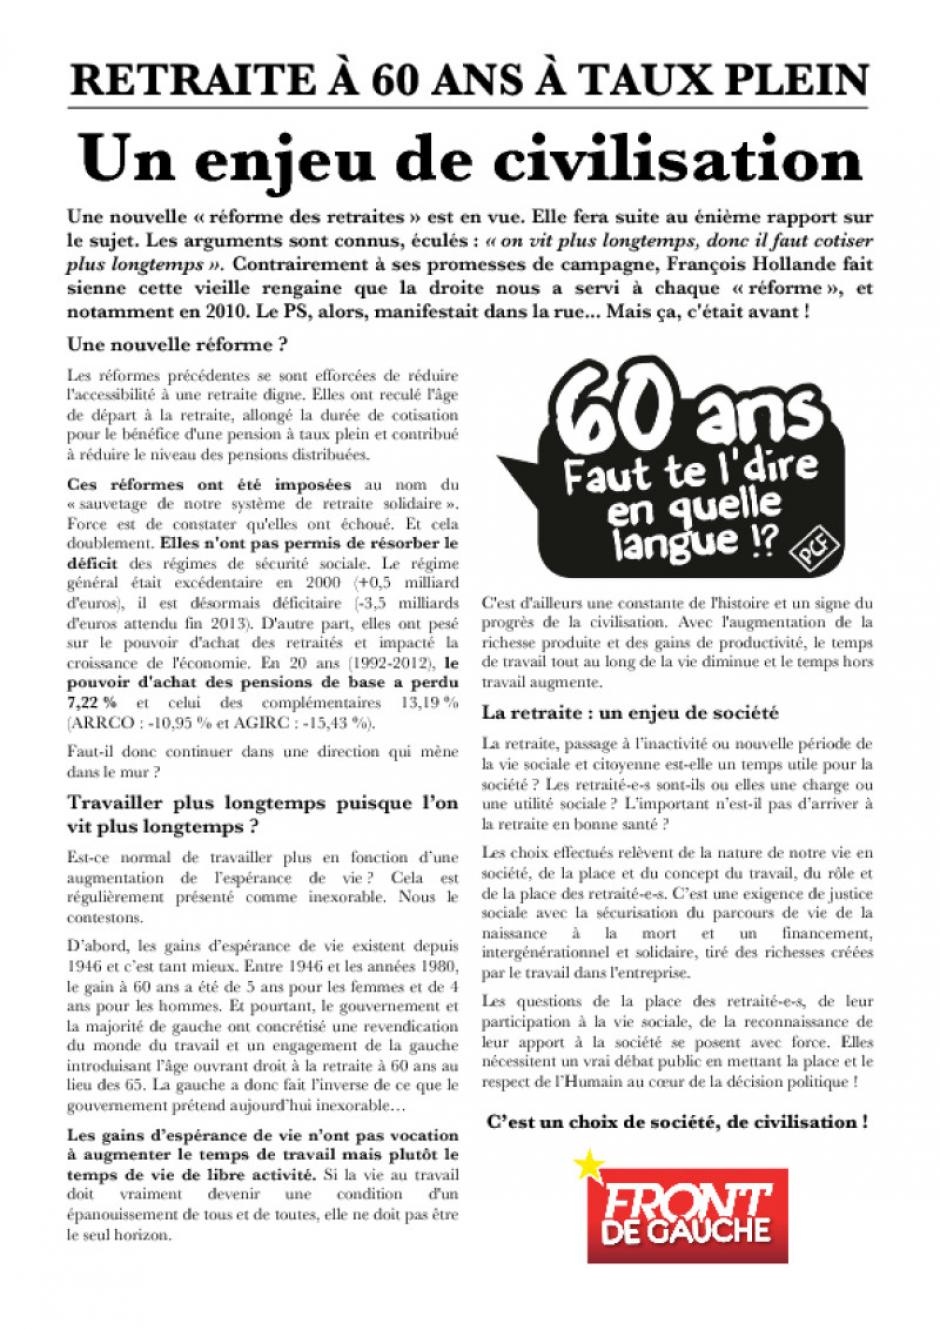 Tract Front de gauche sur les retraites - Valois, 20 juin 2013